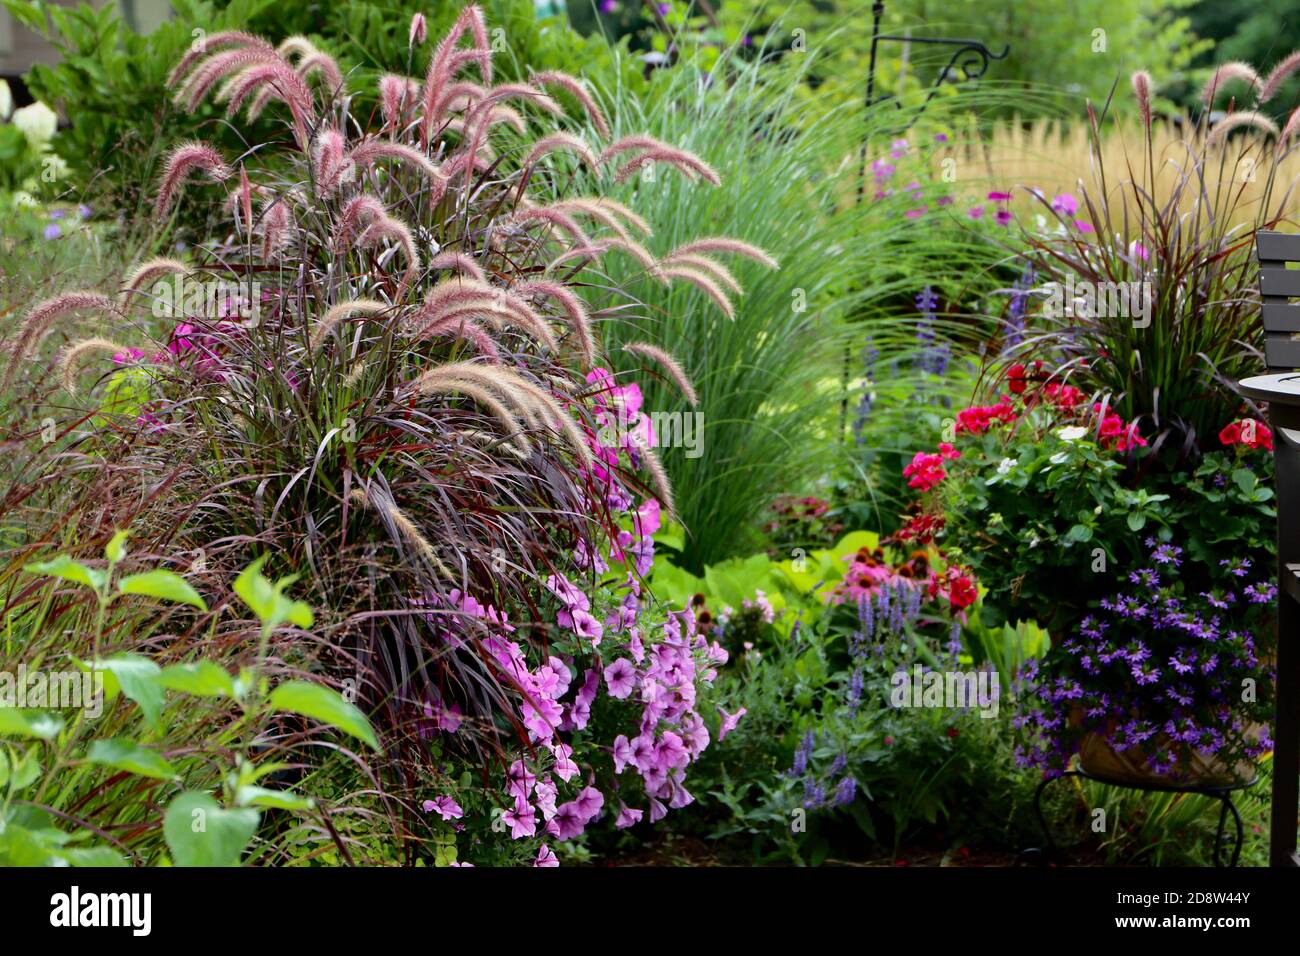 Ein ruhiger und fesselender Gartenbereich mit purpurem Brunnengras, Schilfgräsern, Miscanthus, rosa Kegelblumen und roten Geranien. Stockfoto